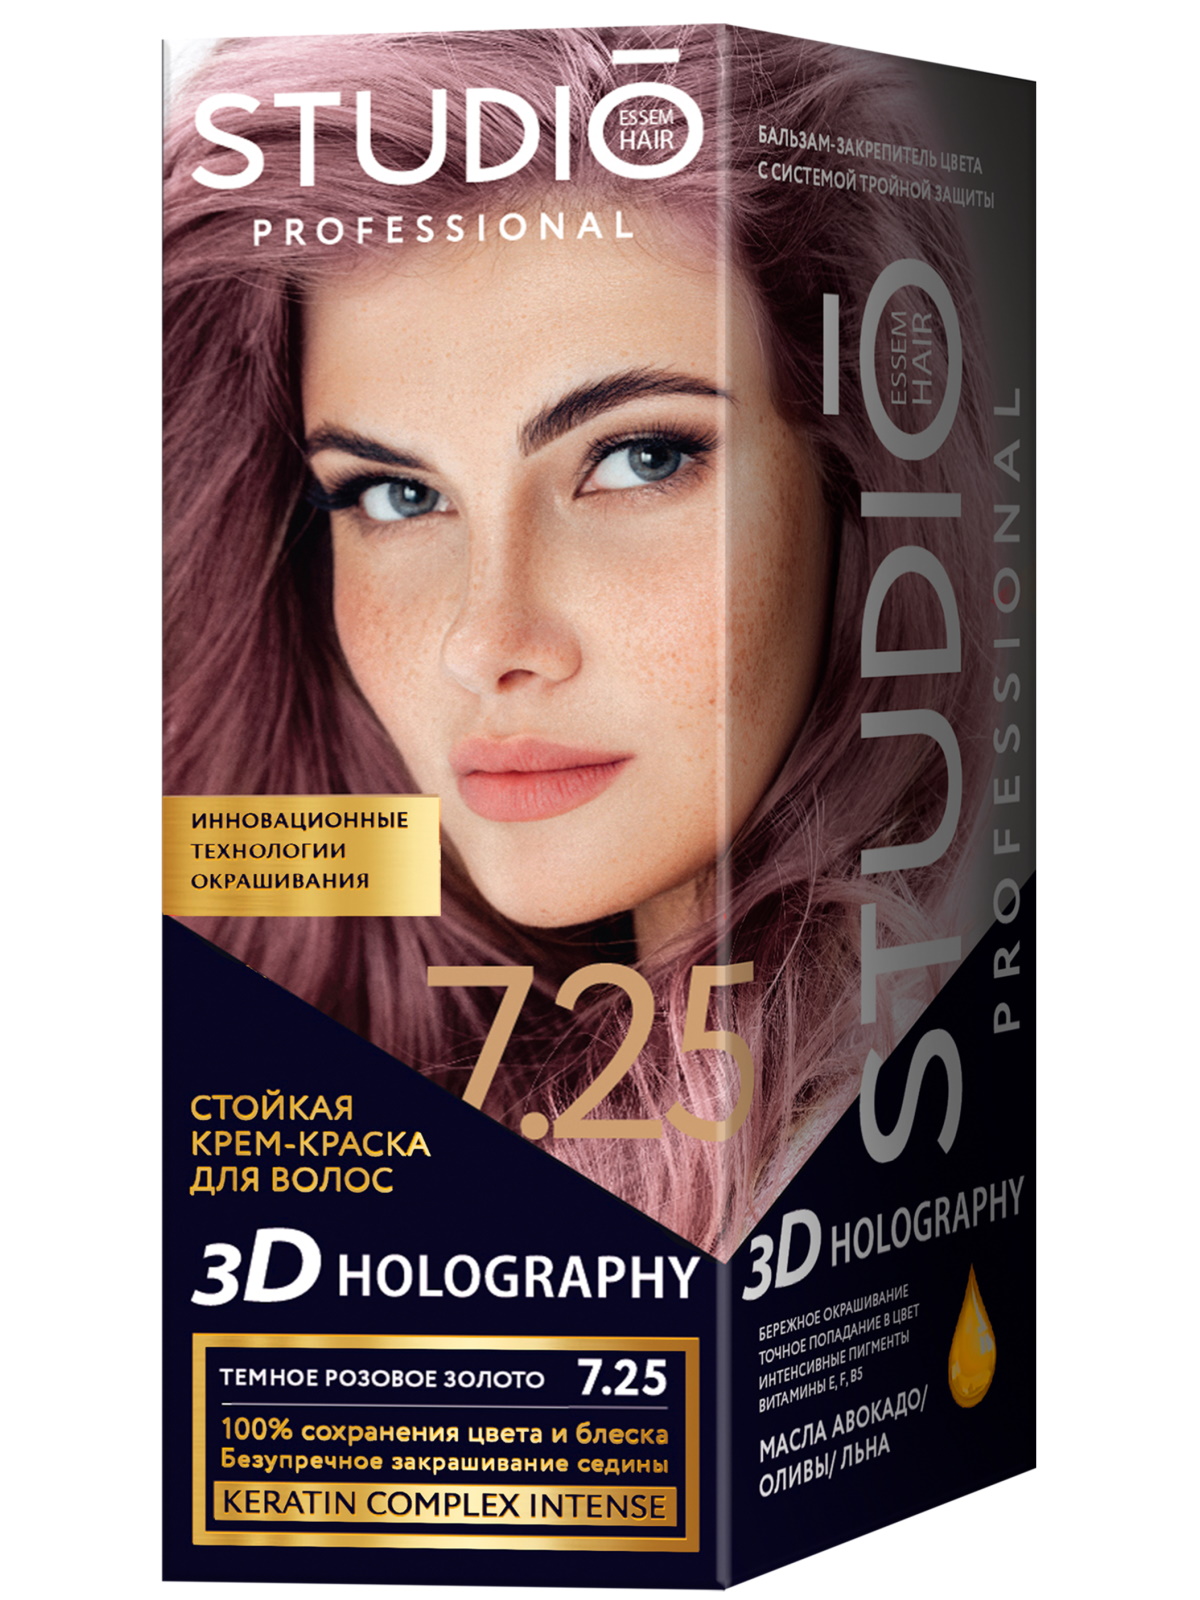 Комплект 3D HOLOGRAPHY STUDIO PROFESSIONAL 7.25 темное розовое золото 2*50+15 мл комплект 3d holography studio professional 7 35 ярко рыжий 2 50 15 мл